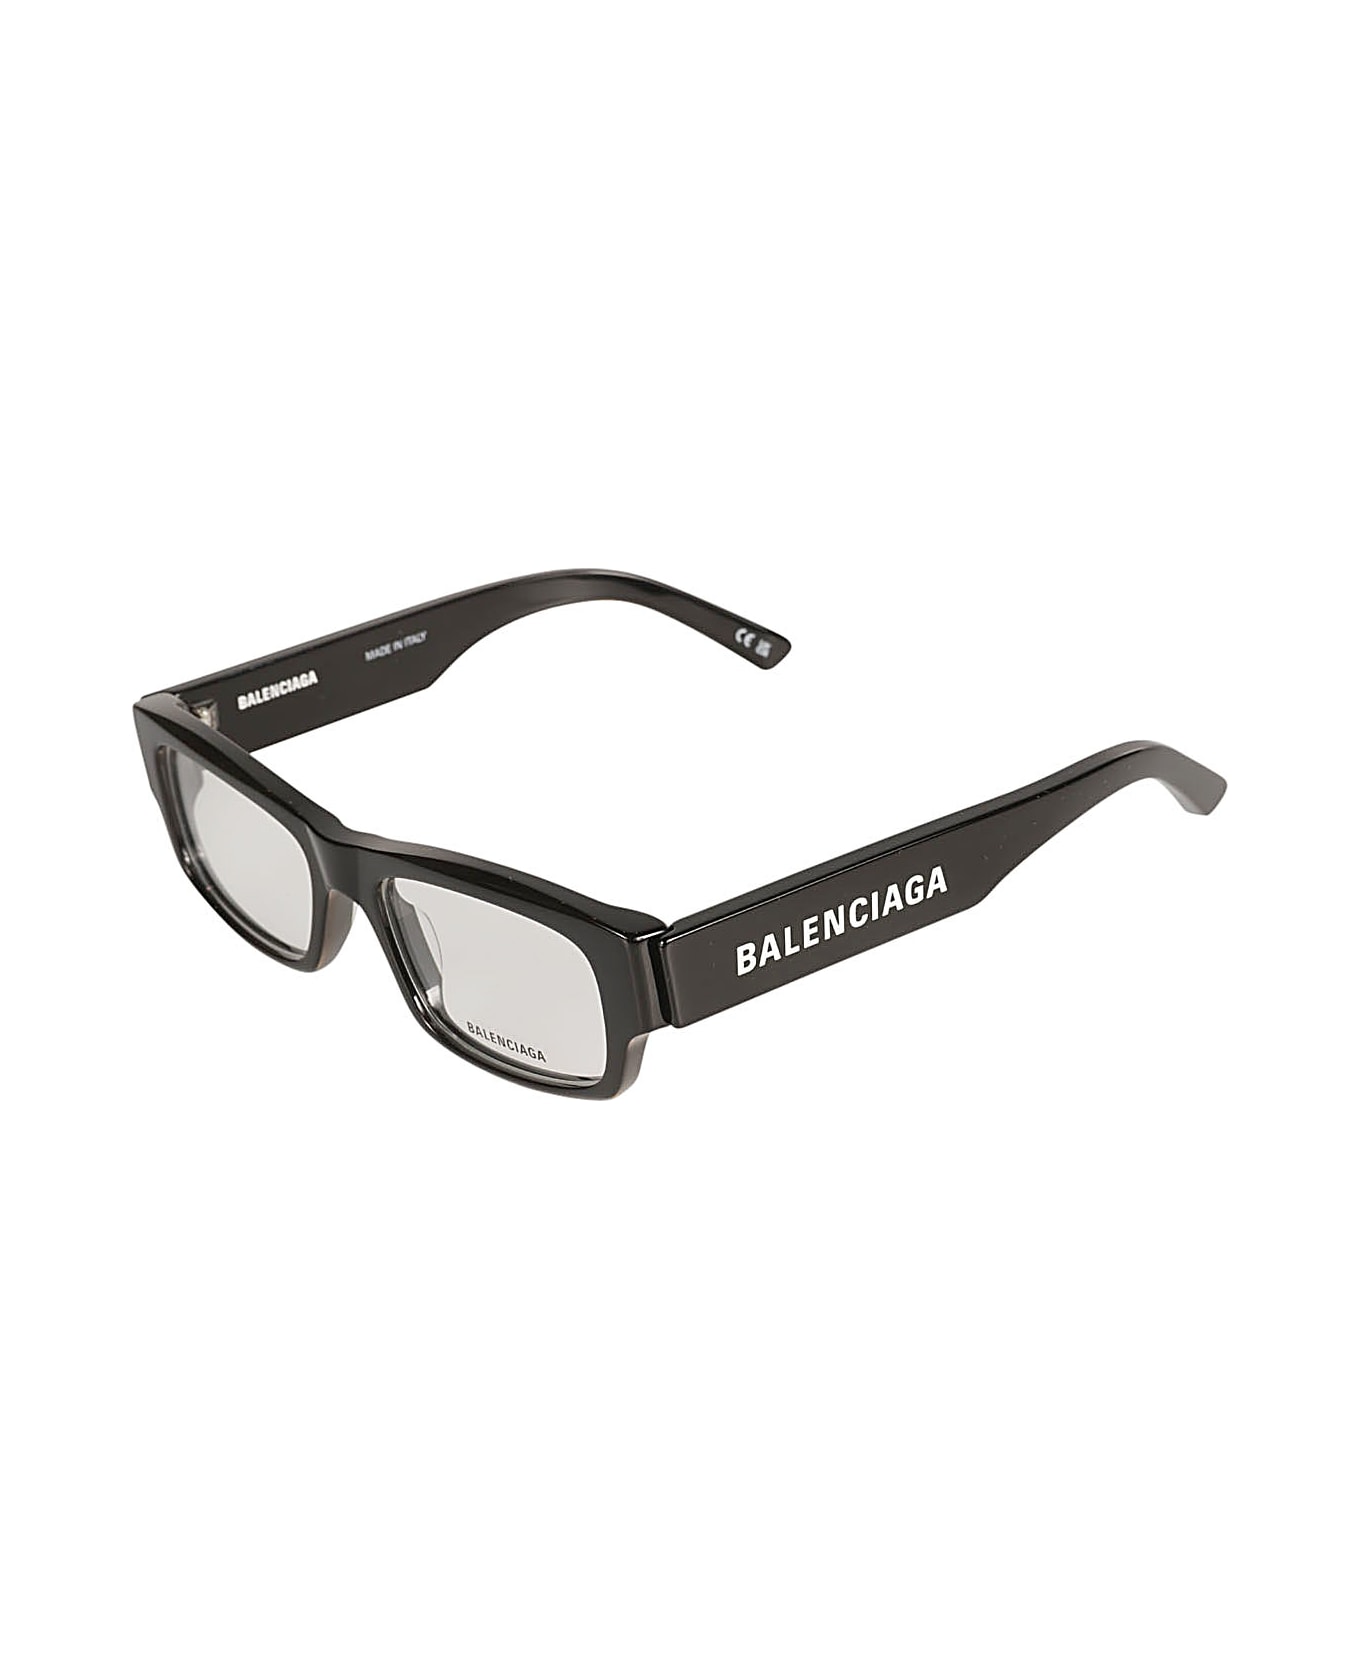 Balenciaga Eyewear Logo Sided Rectangular Frame Glasses - Black/Transparent アイウェア